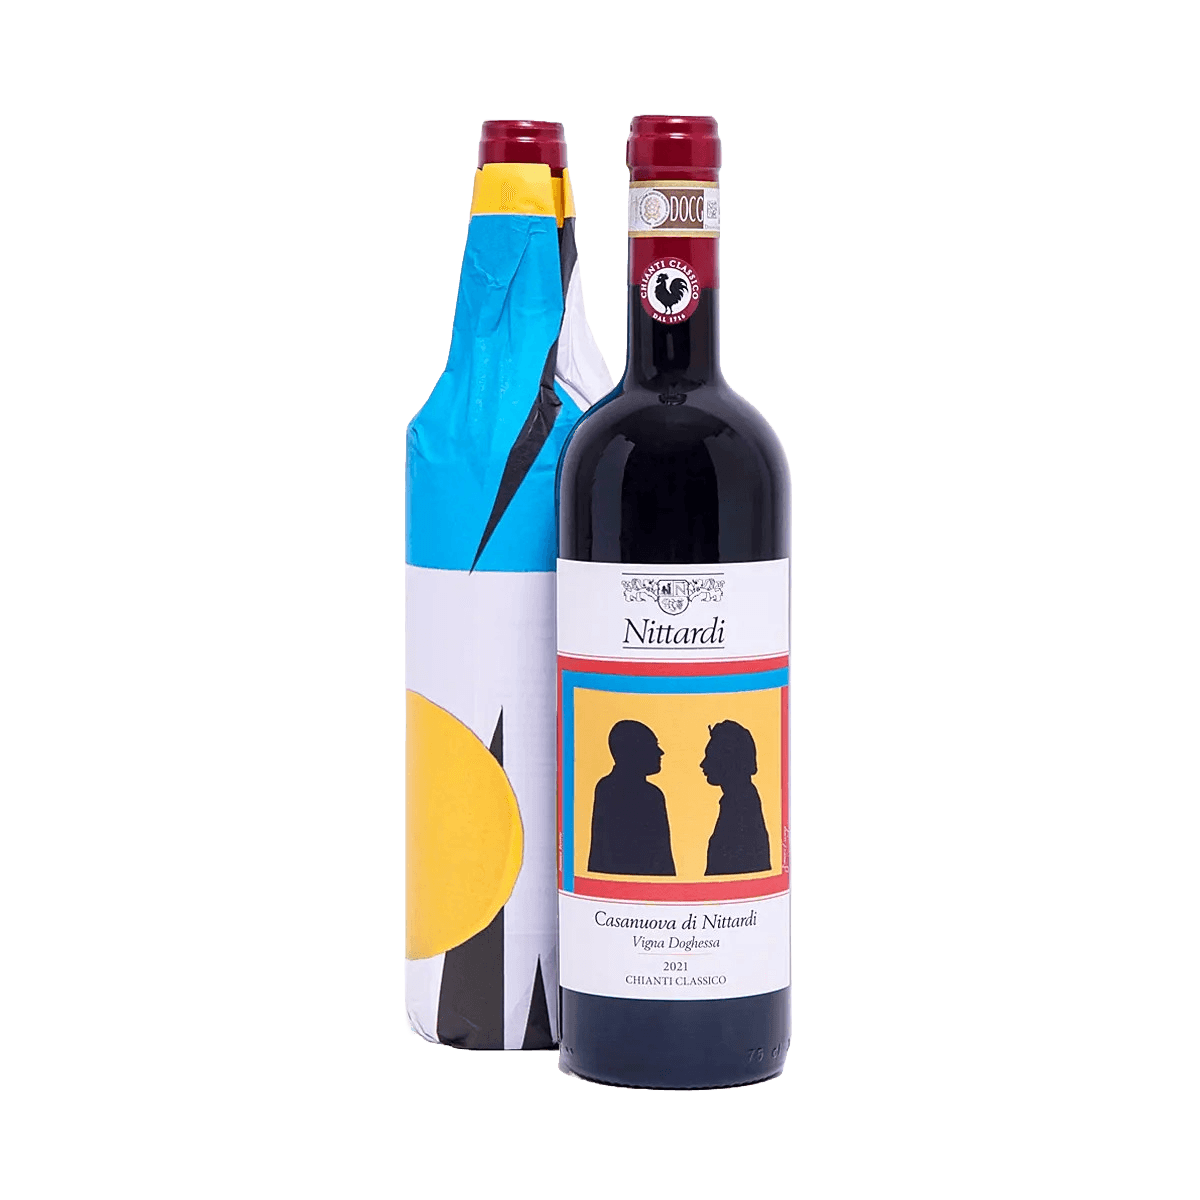 Chianti Classico Casanuova di Nittardi DOCG BIO red wine